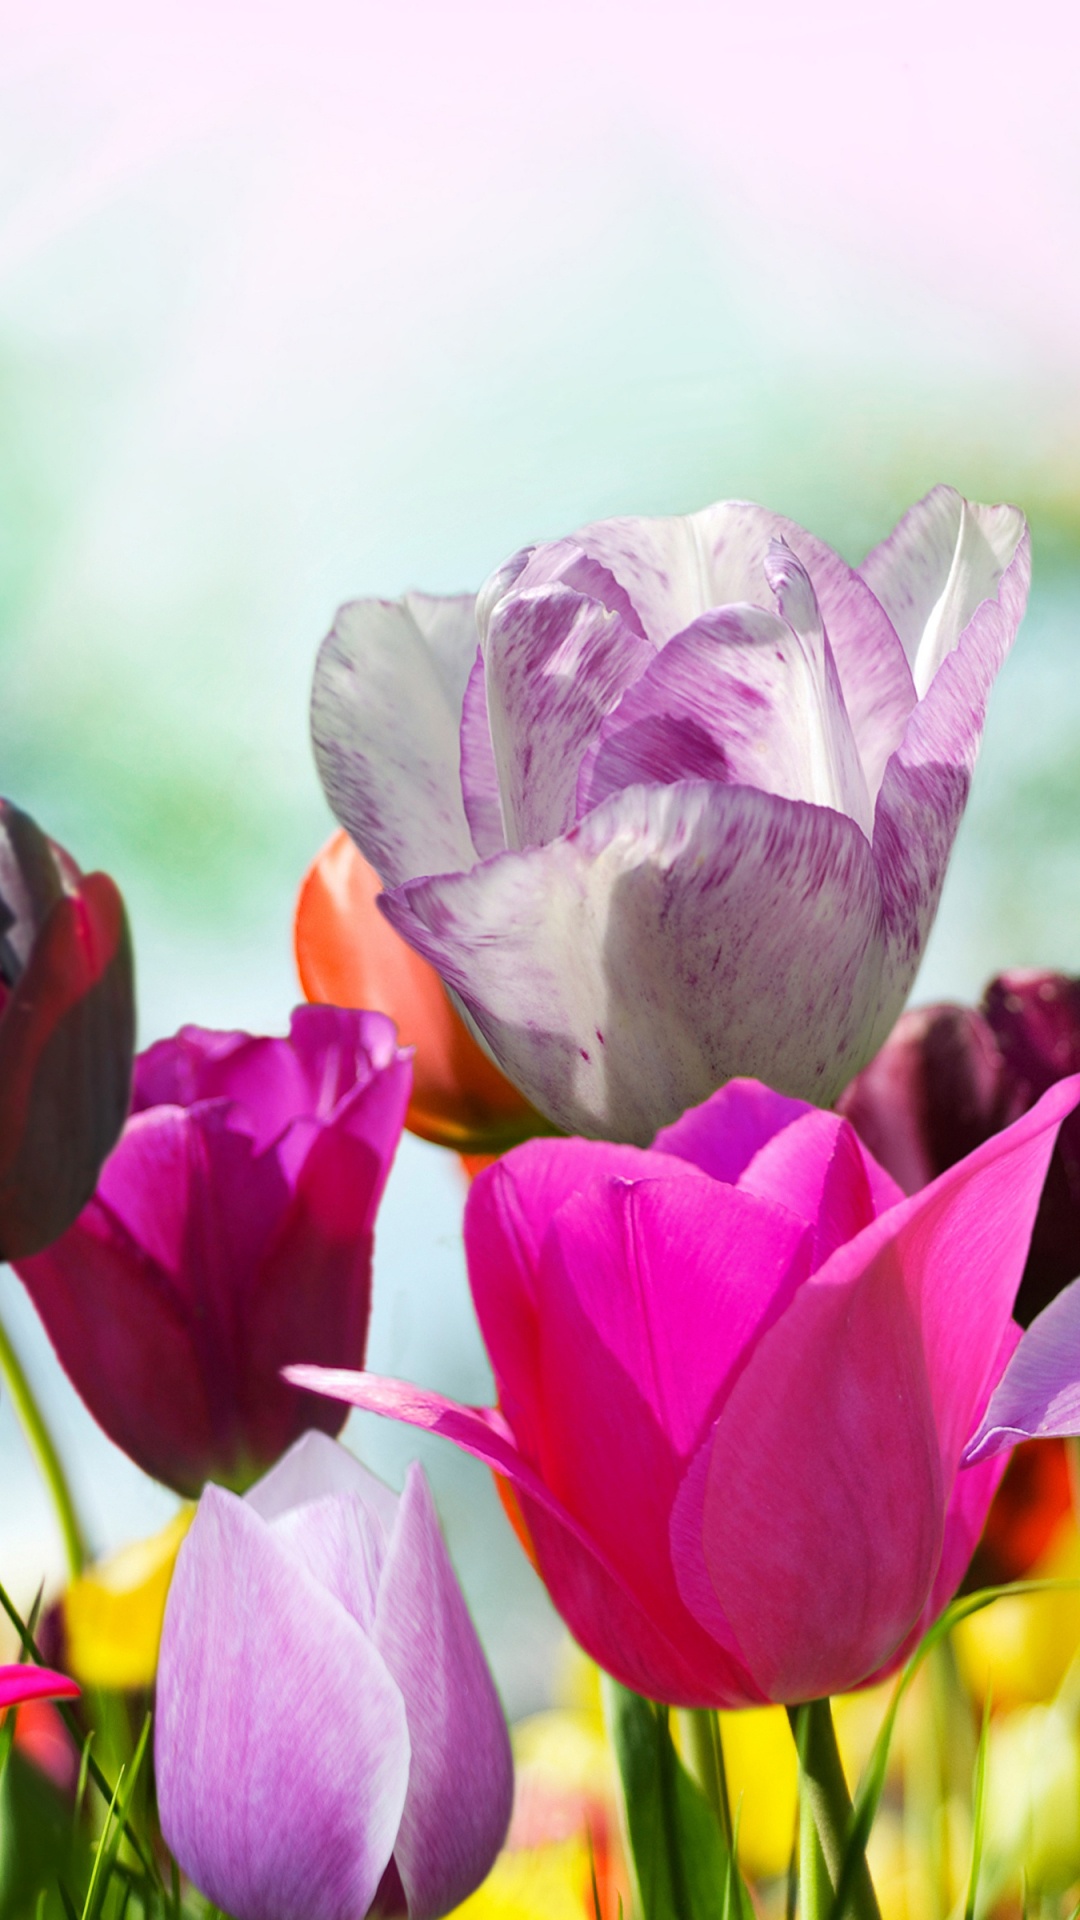 Tulipes Violettes et Roses en Fleurs Pendant la Journée. Wallpaper in 1080x1920 Resolution